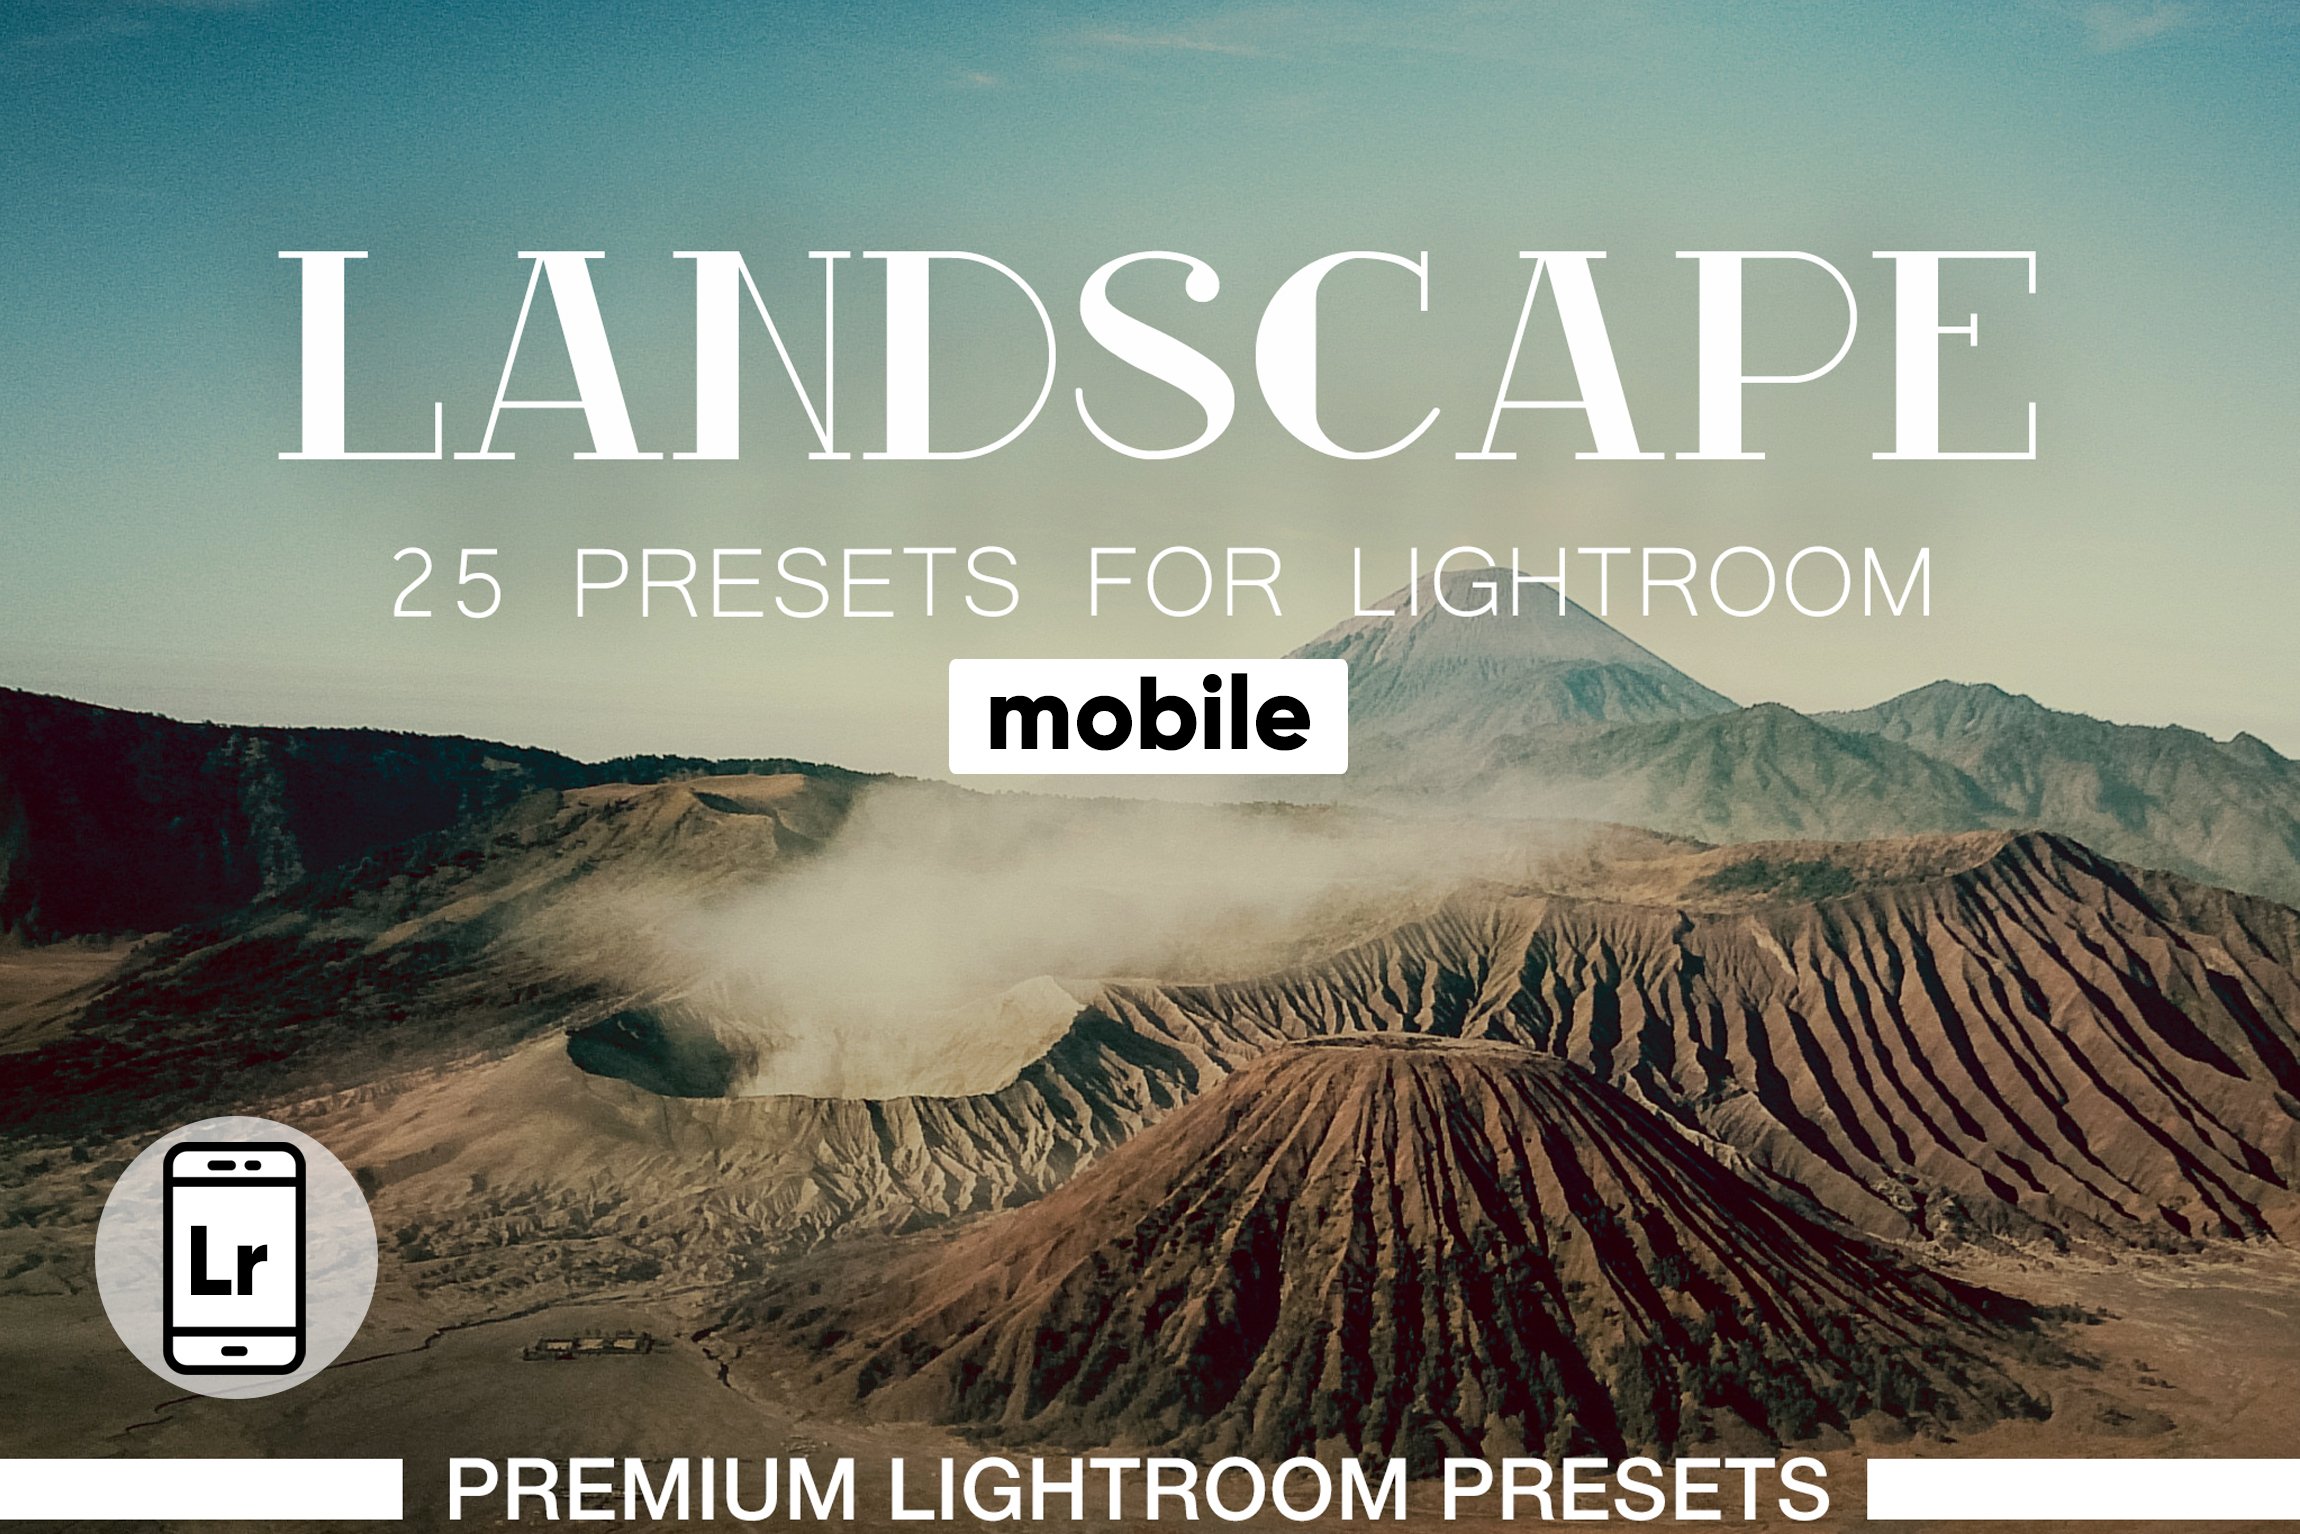 Landscapes Presets Lightroom Mobilecover image.